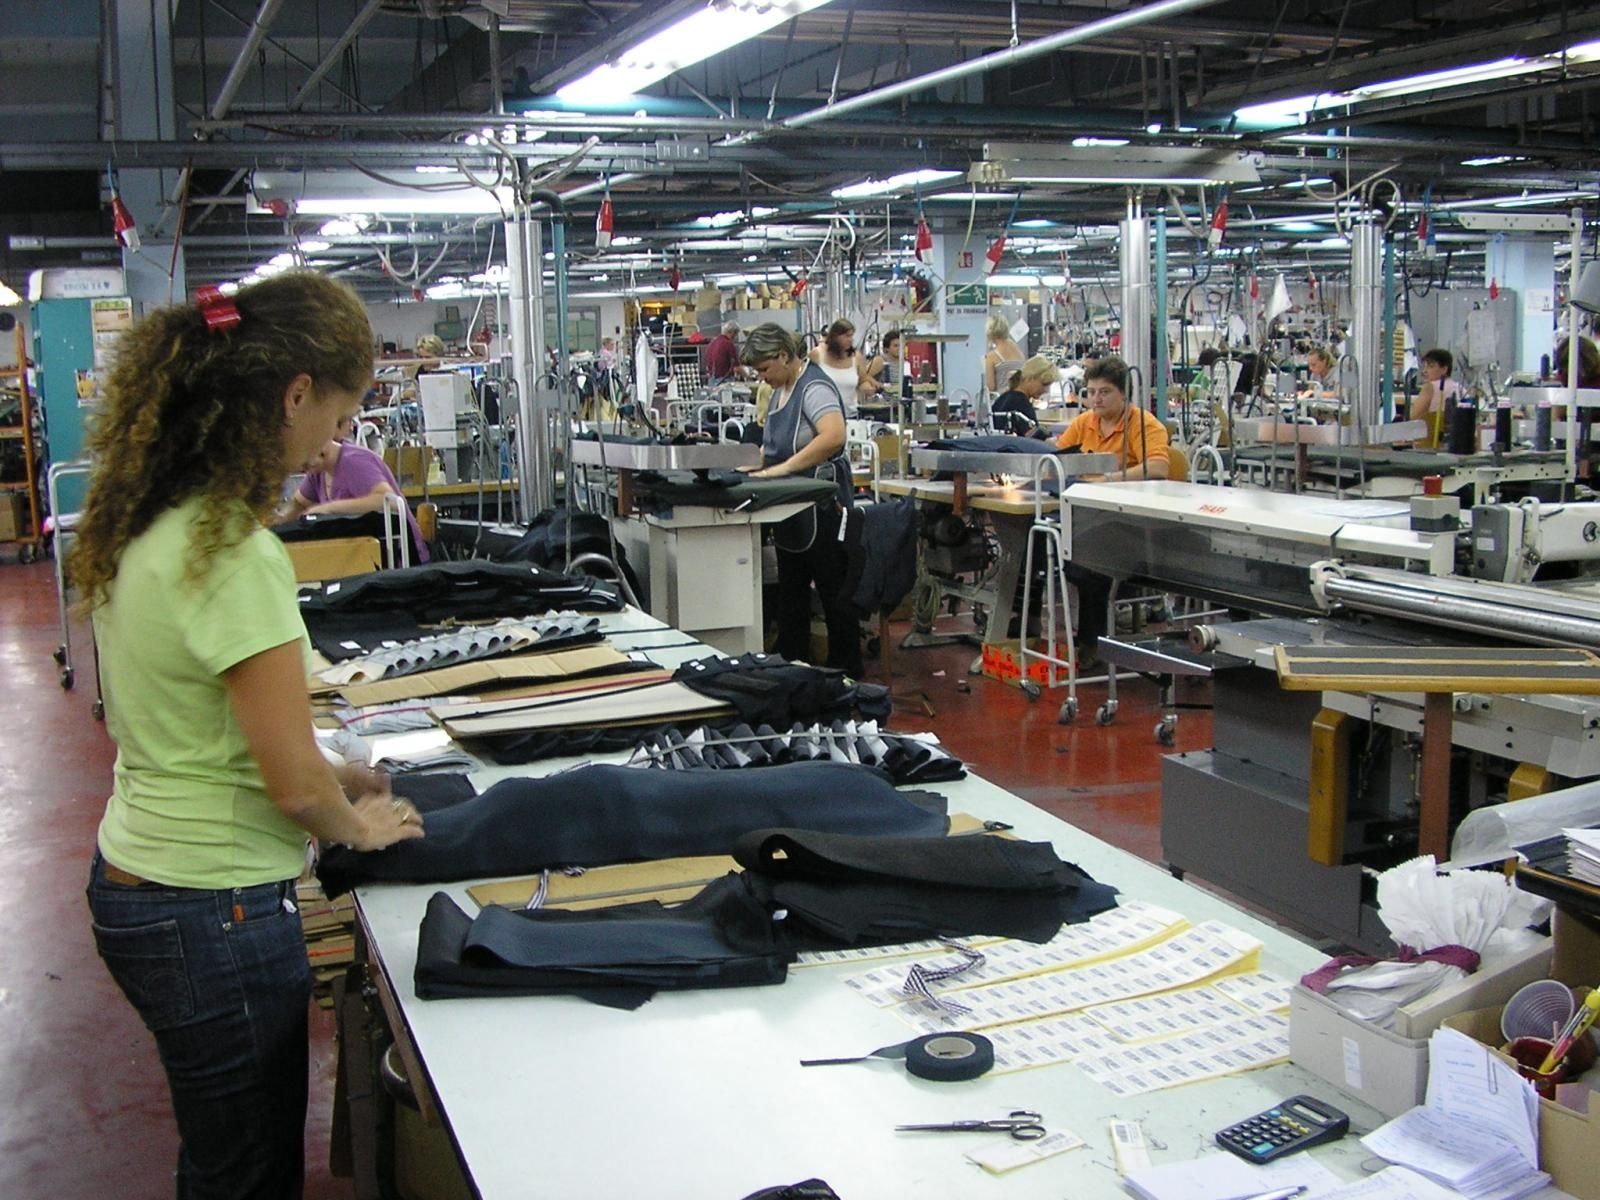 27.09.2009., Varazdin - U tvornici Varteks danas je 2800 zaposlenih, a radnici vecinom imaju minimalne place. Danica Kucar u Varteksu broji 22 godine radnog staza. 
Photo: Mia Horvat/24sata